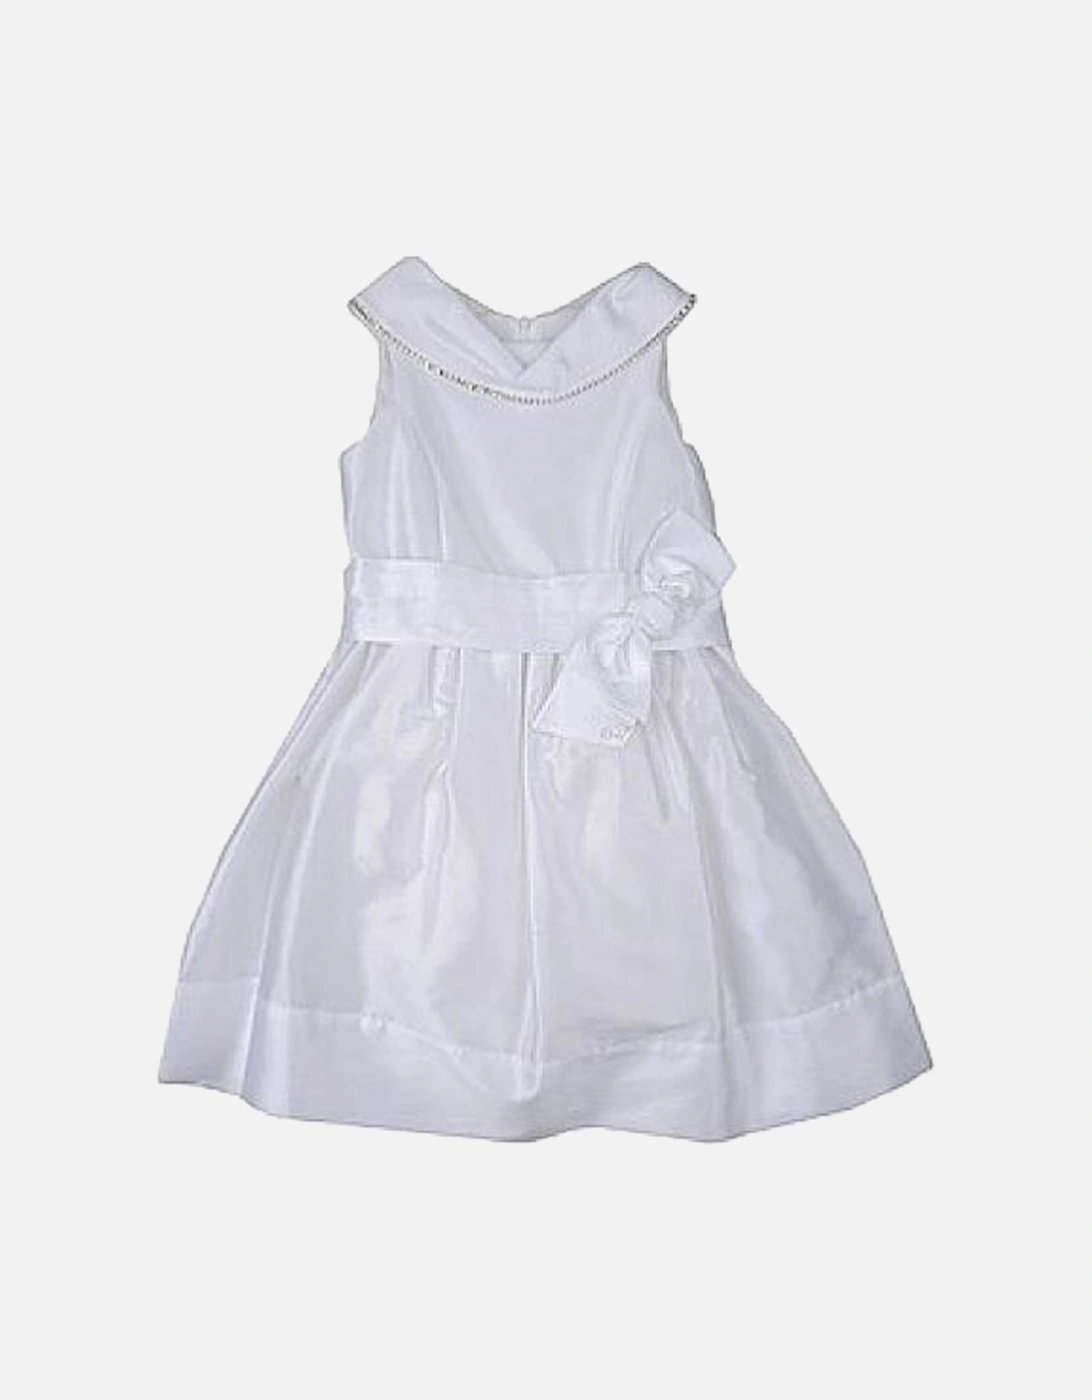 Baby Girls White Dress, 2 of 1